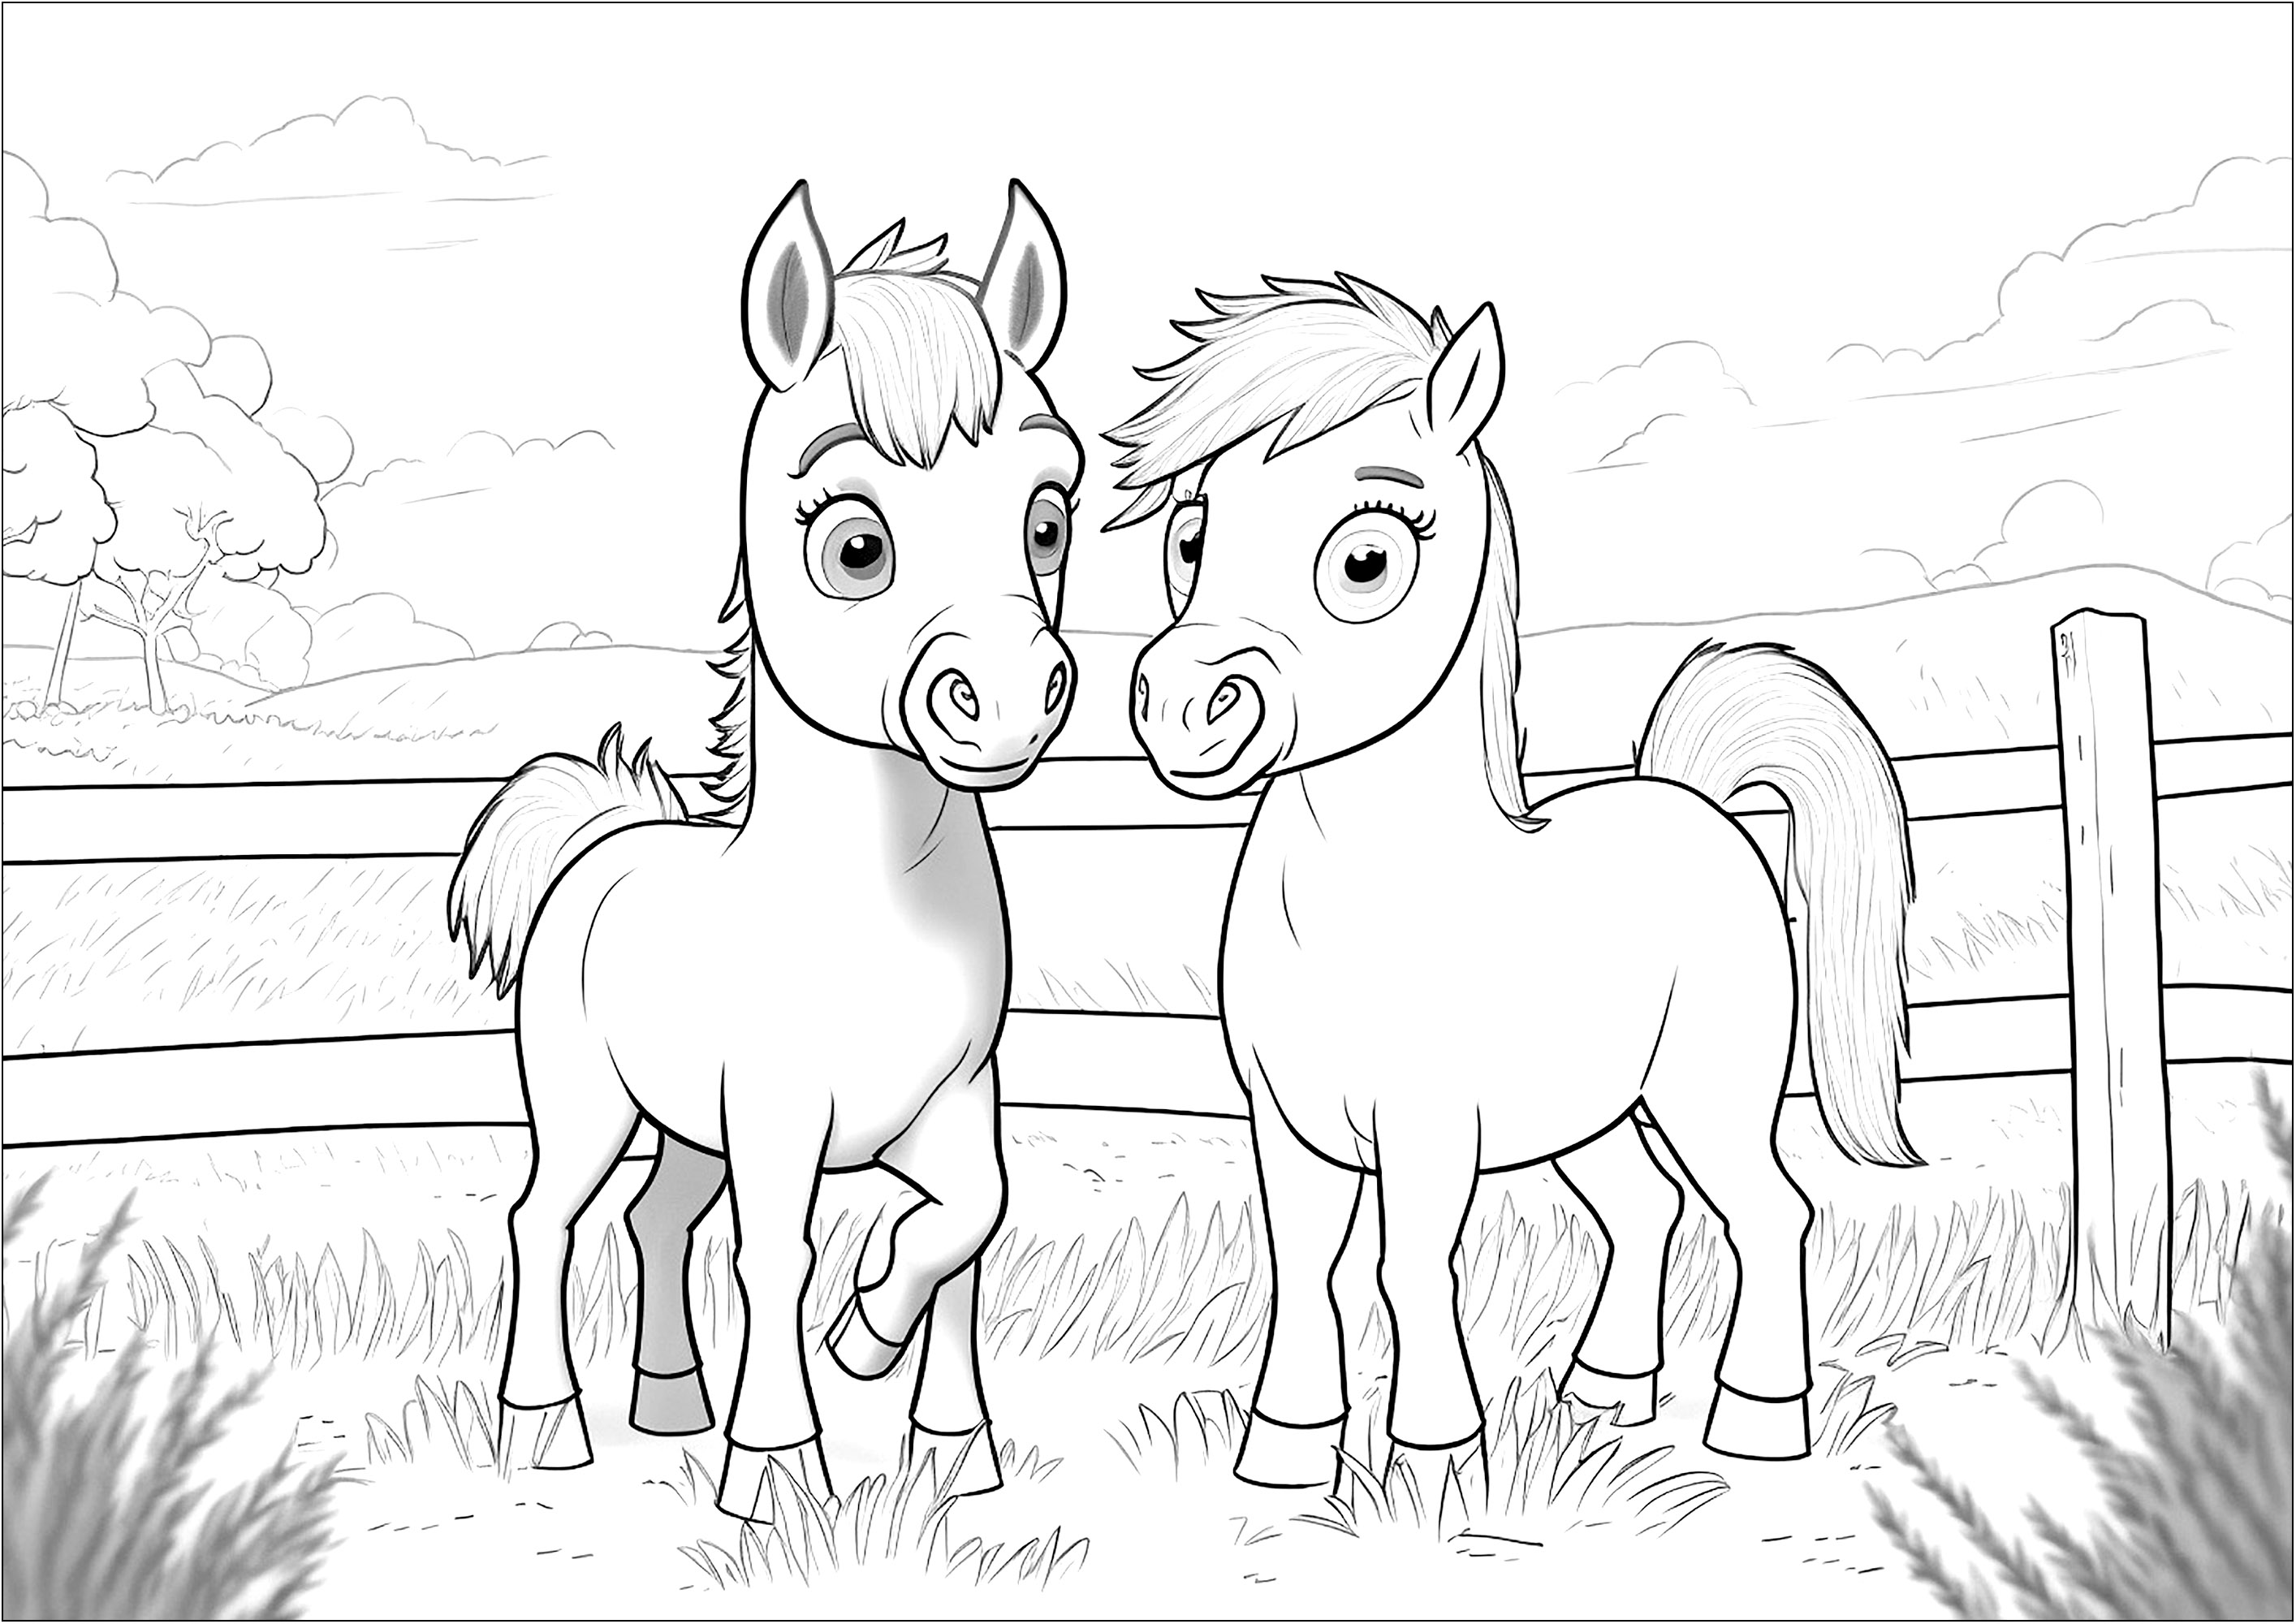 Dois Cavalos bonitos para colorir. Esta página colorida é perfeita para crianças que adoram Cavalos e o mundo da equitação. Apresenta dois Cavalos na sua caneta, com um fundo agradável de árvores, planícies e nuvens.